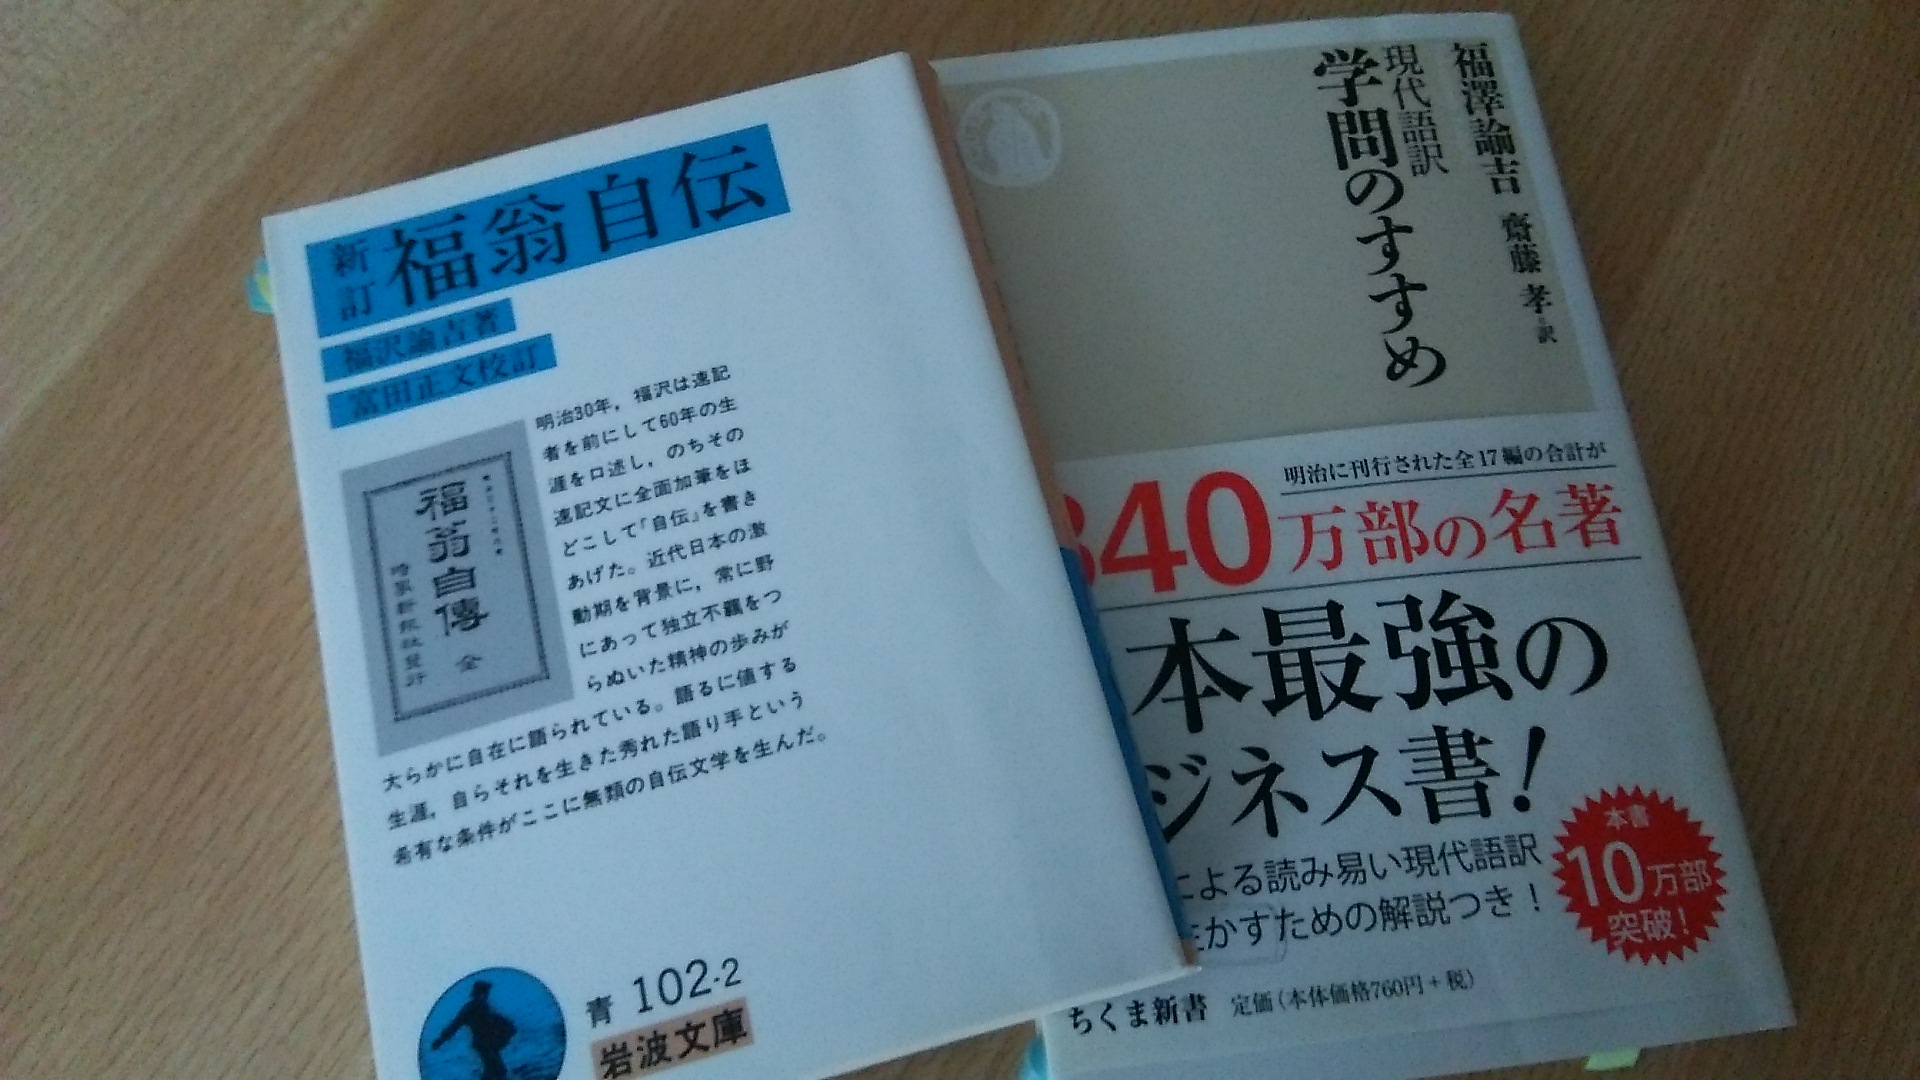 福沢諭吉が翻訳した言葉は その功績を知る 西洋文化の概念を日本語に翻訳 知のソムリエ